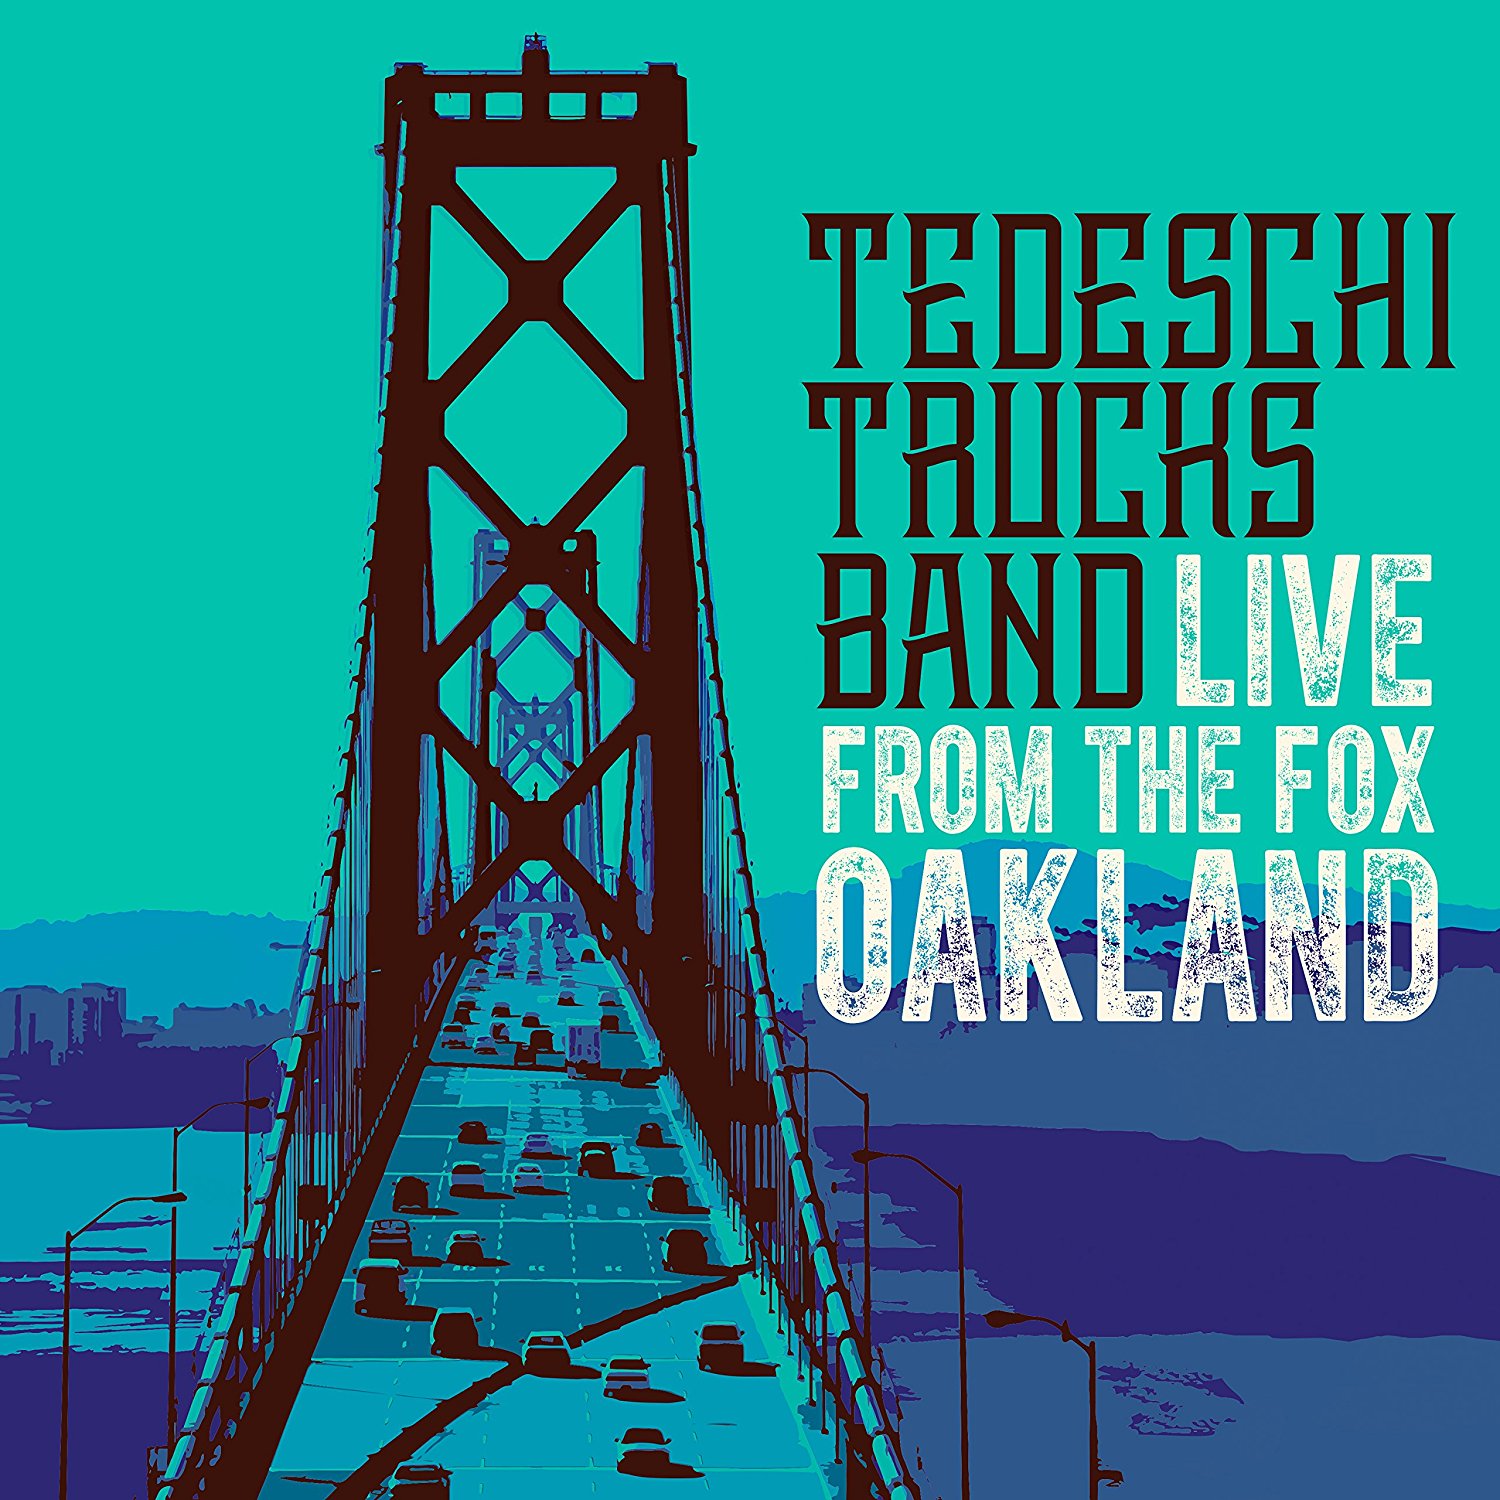 Tedeschi Trucks Band - Live From The Fox Oakland (2017) [HDTracks FLAC 24bit/96kHz]